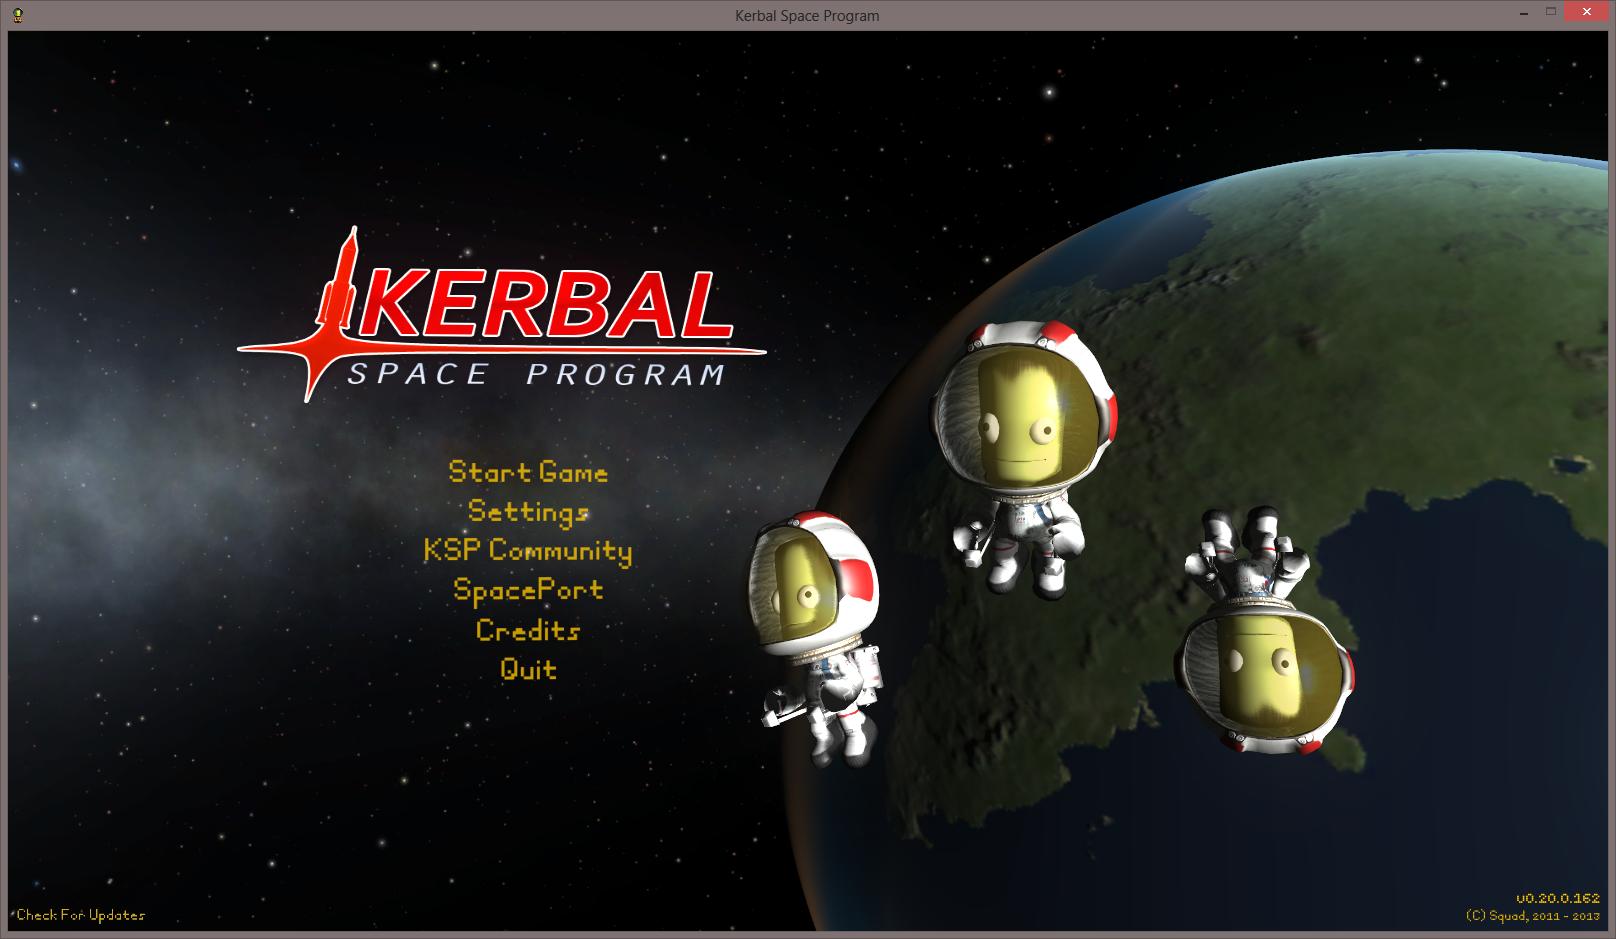 Kerbal Space Program 0.20.2 (Linux) Crack